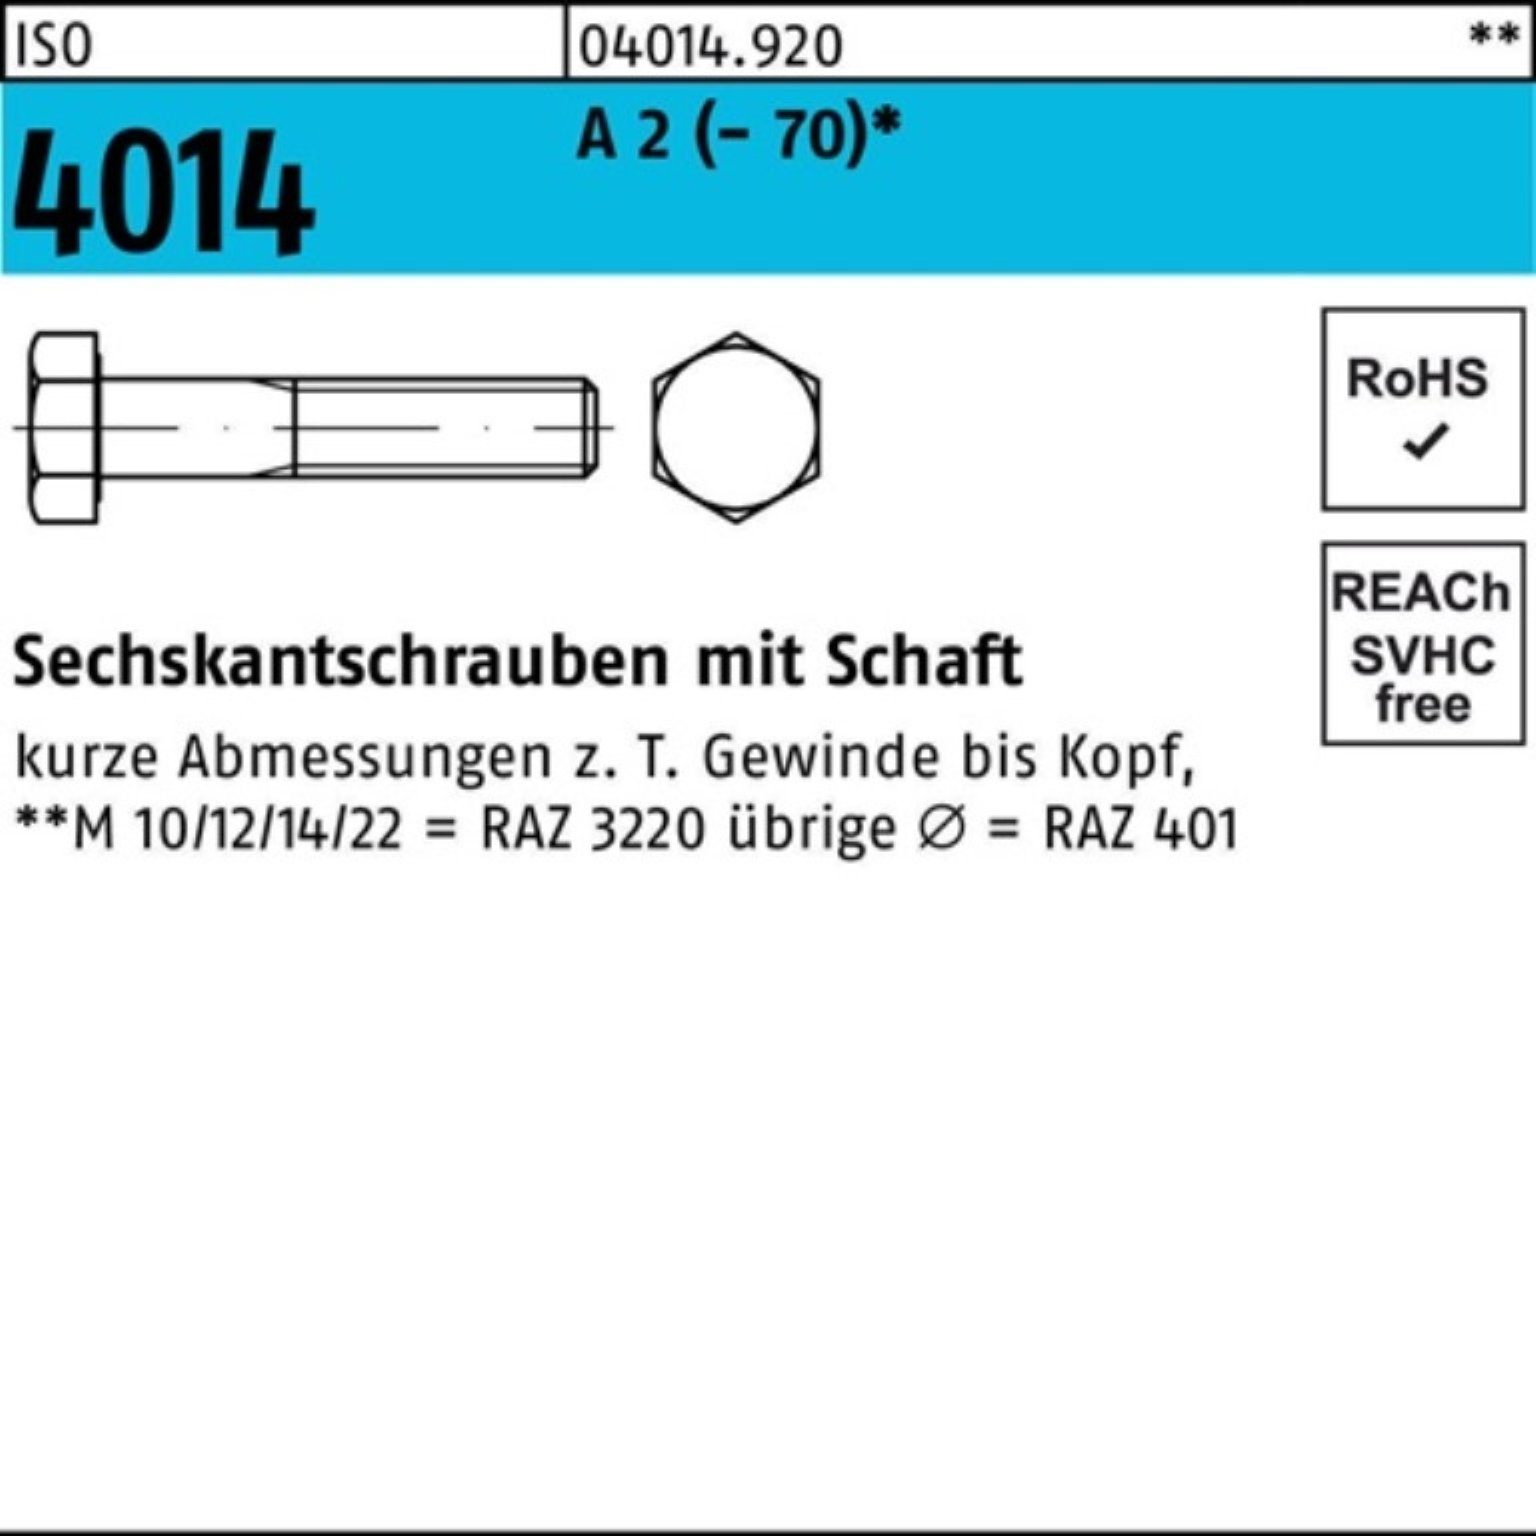 Bufab Sechskantschraube 100er Pack Sechskantschraube ISO 4014 Schaft M10x 70 A 2 (70) 50 St